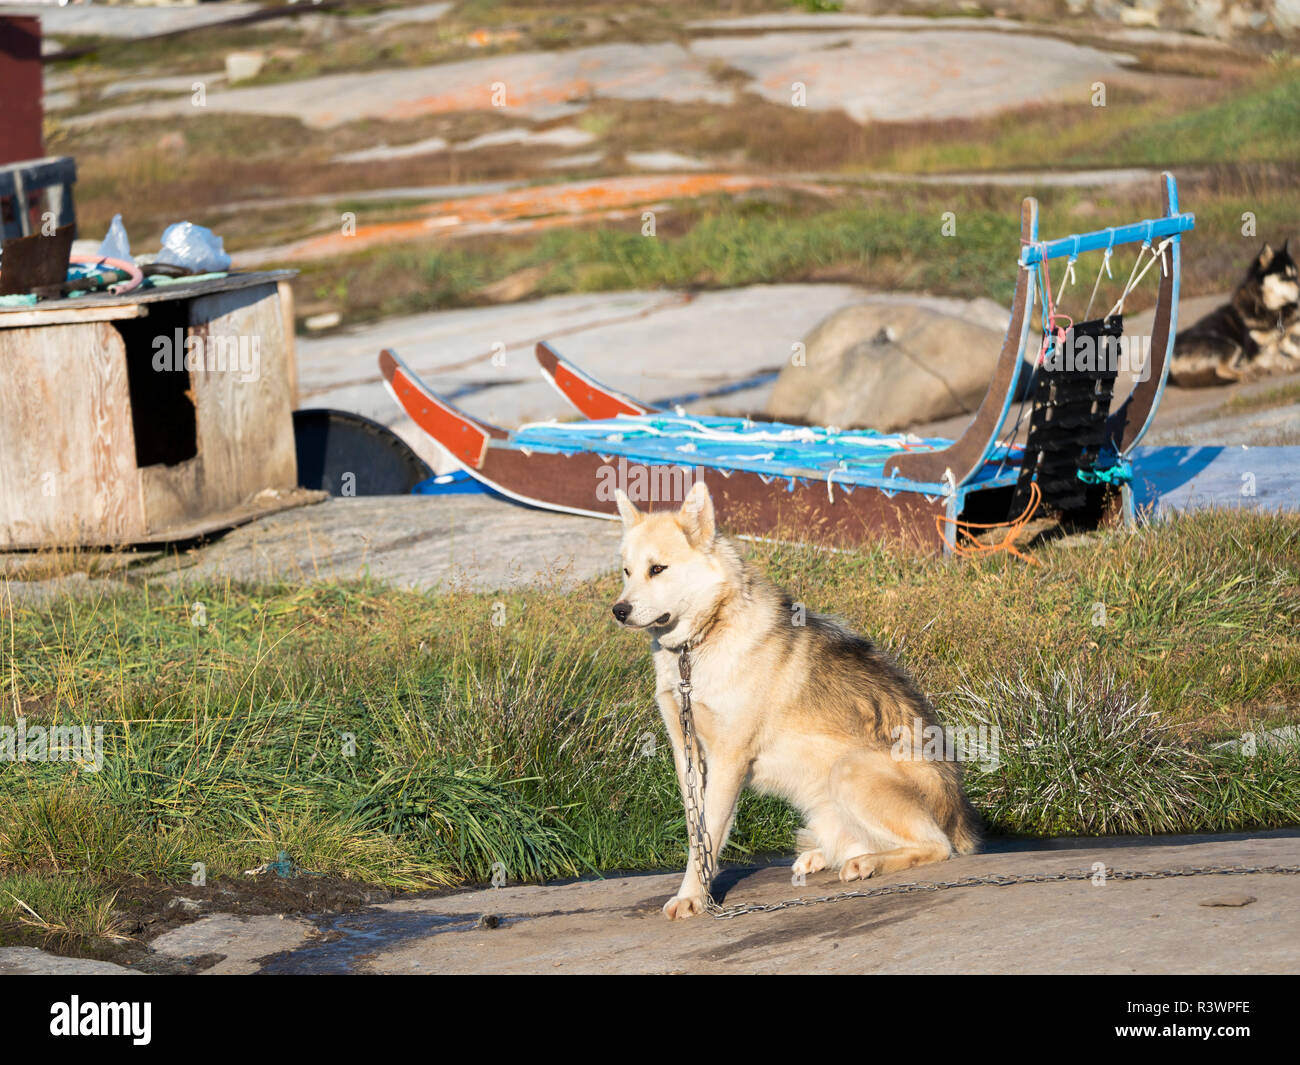 Chiens de traîneau. Oqaatsut village Inuit (autrefois appelé Rodebay) situé dans la baie de Disko, Groenland, Danemark Banque D'Images